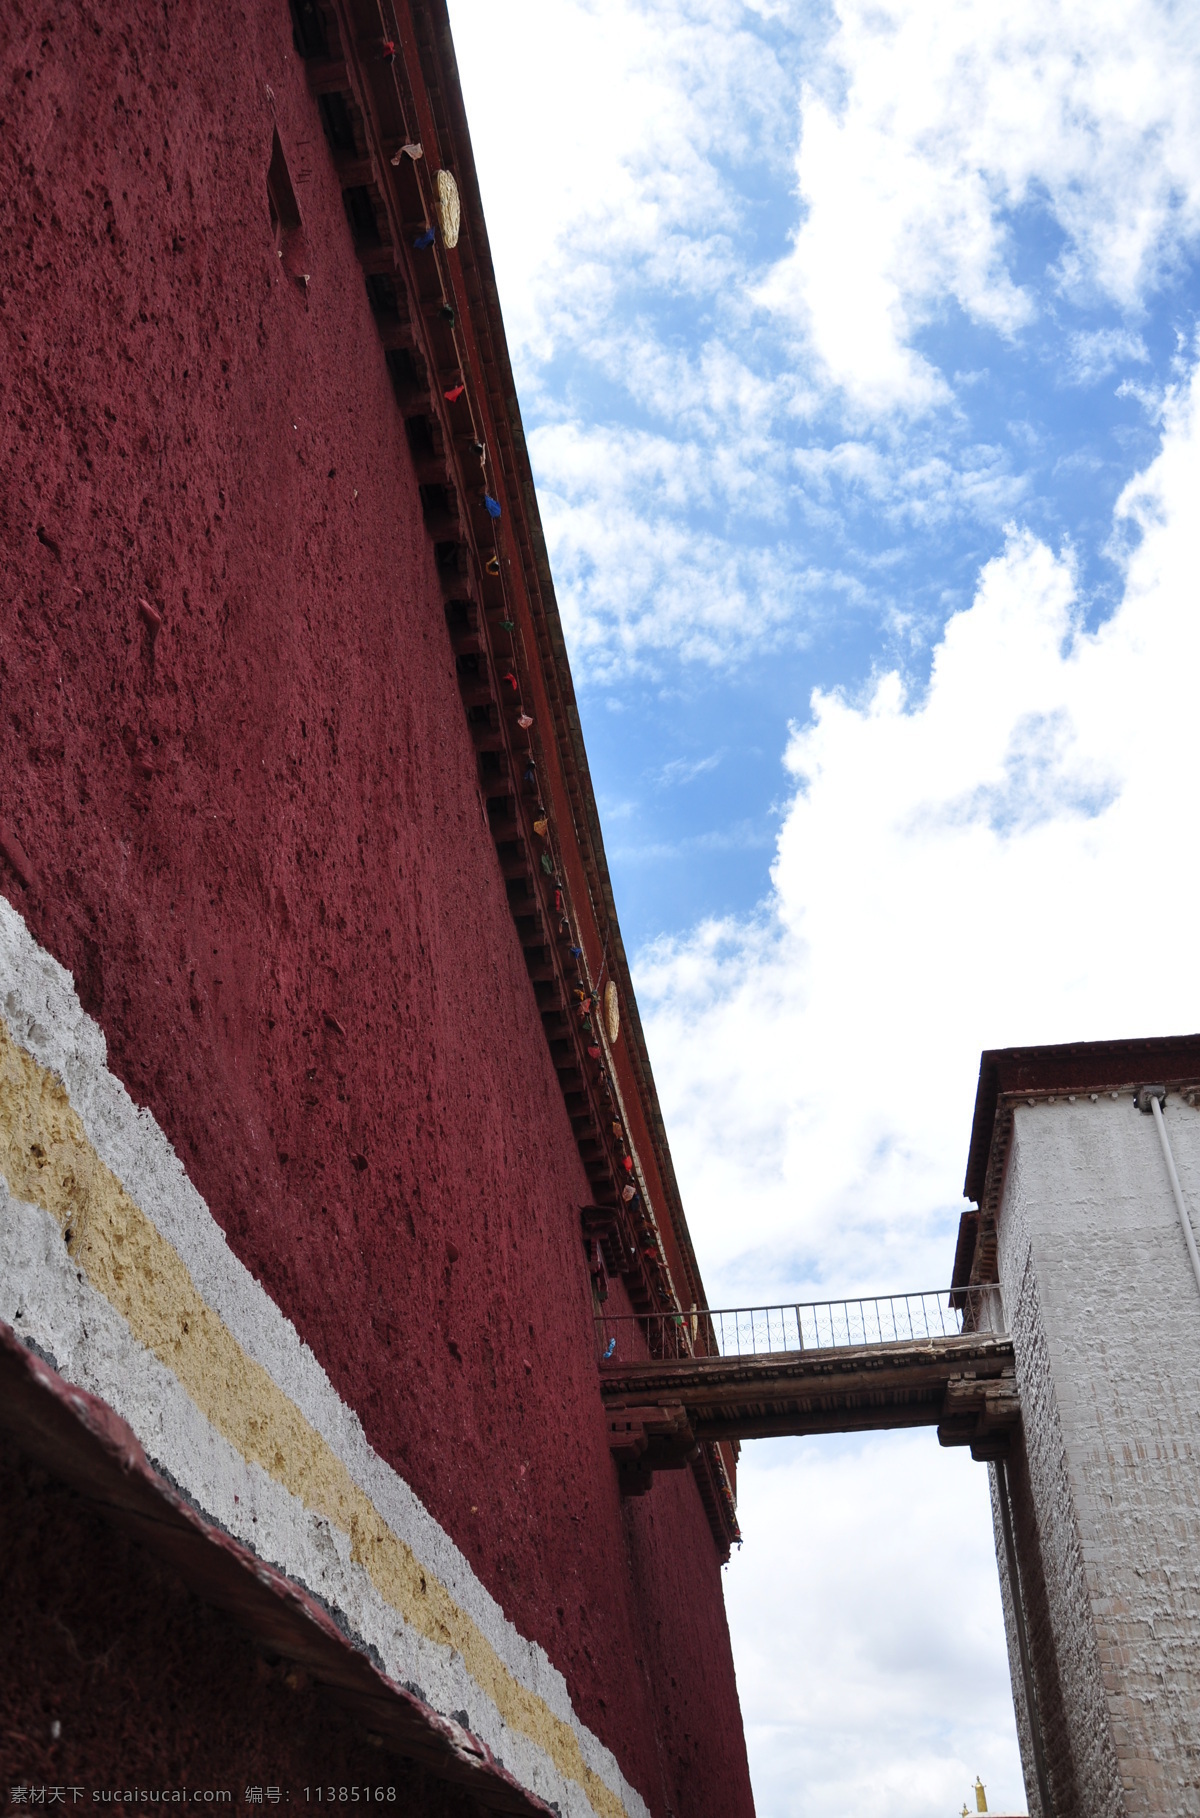 萨迦寺的一角 萨迦寺 藏传佛教 西藏 蓝天 建筑 西藏风情 人文景观 旅游摄影